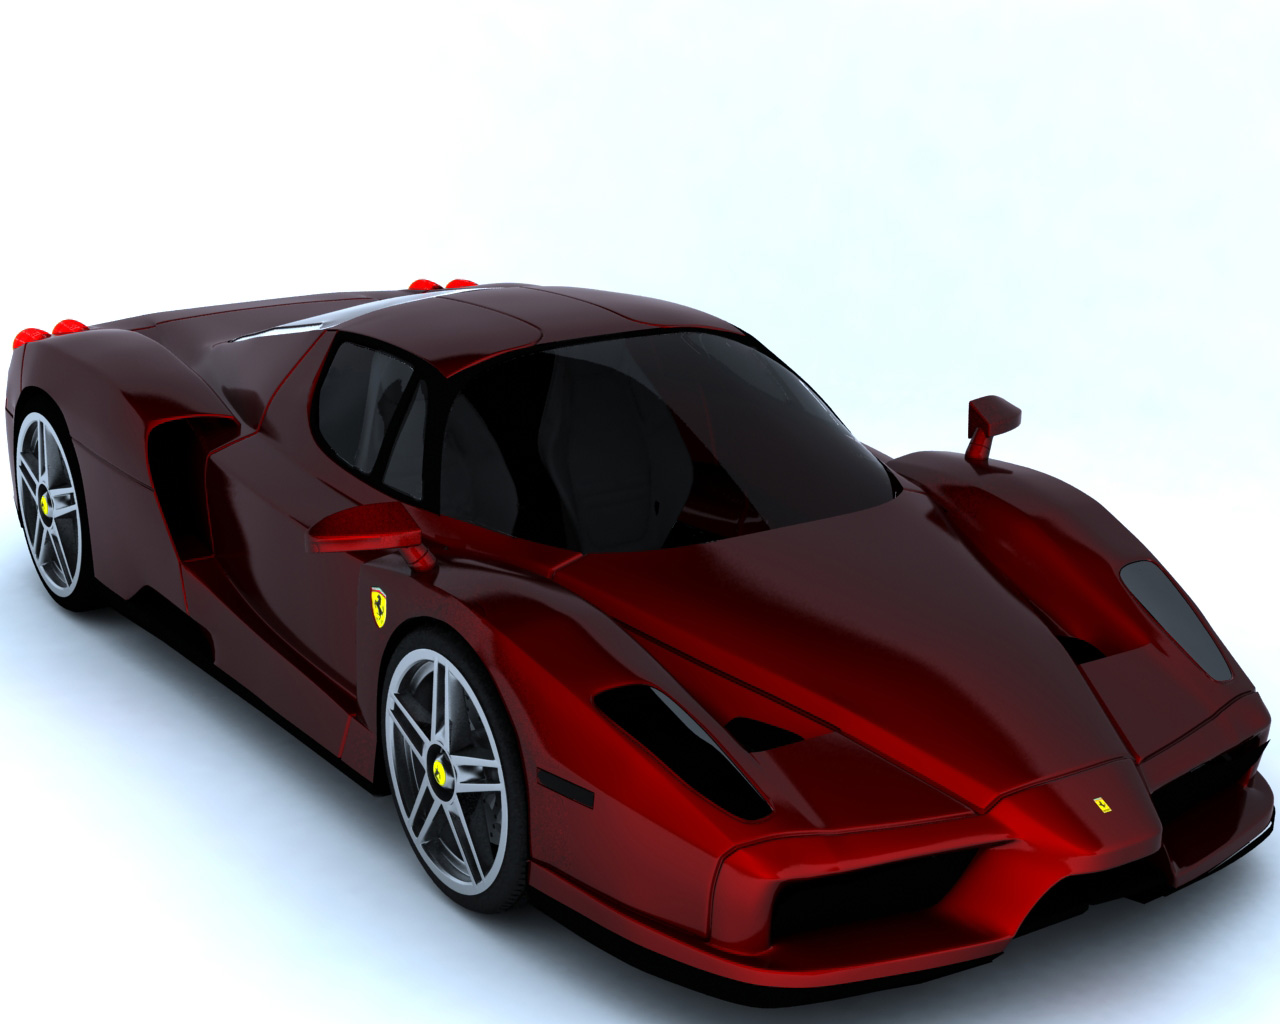 Ferrari Enzo (studio render)